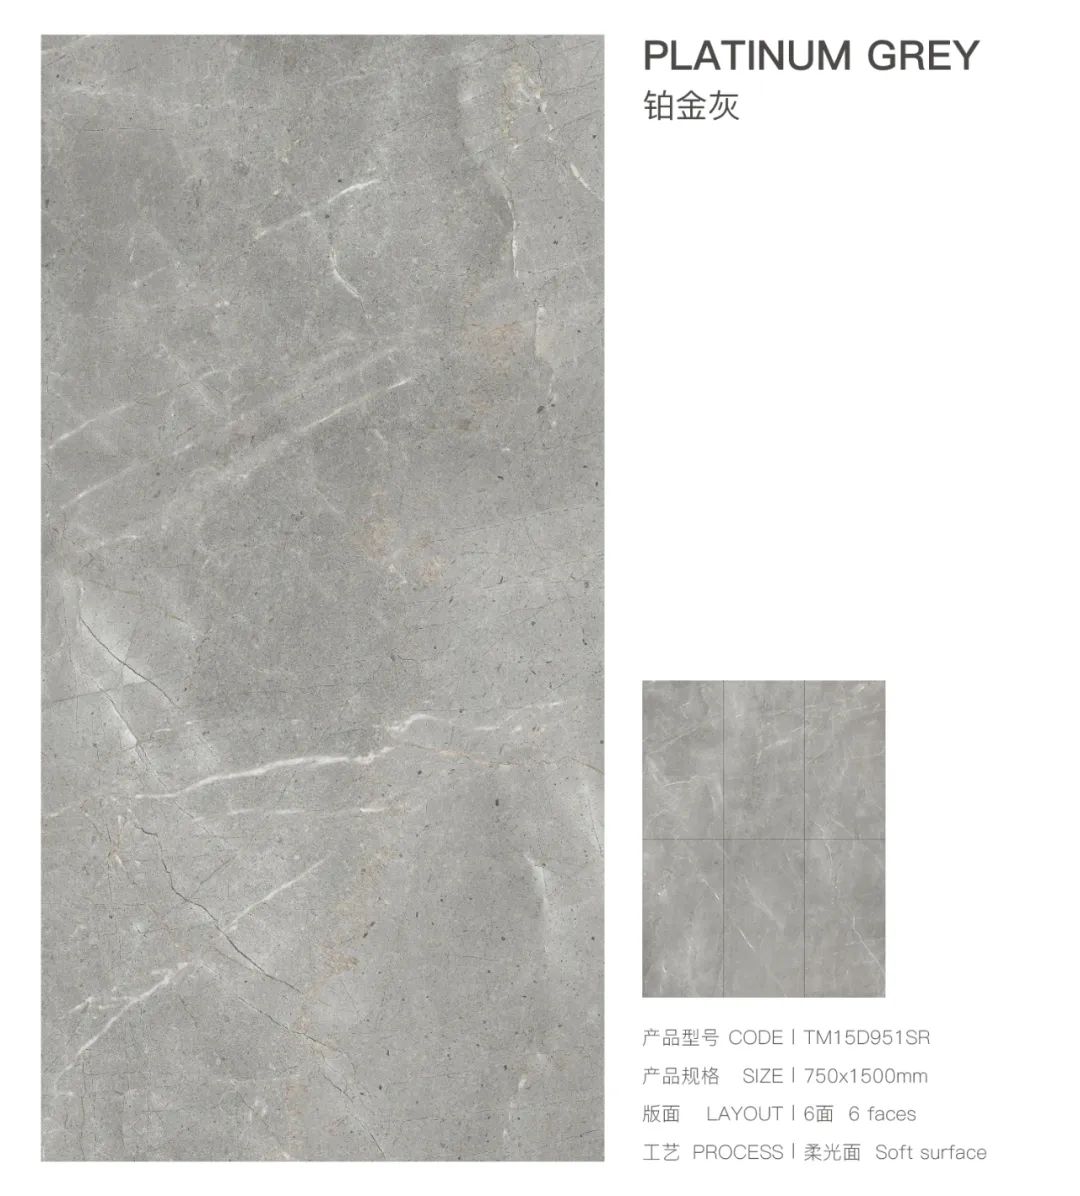 新品上市丨通利大理石瓷砖750x1500新品魅力呈现(上)(图12)